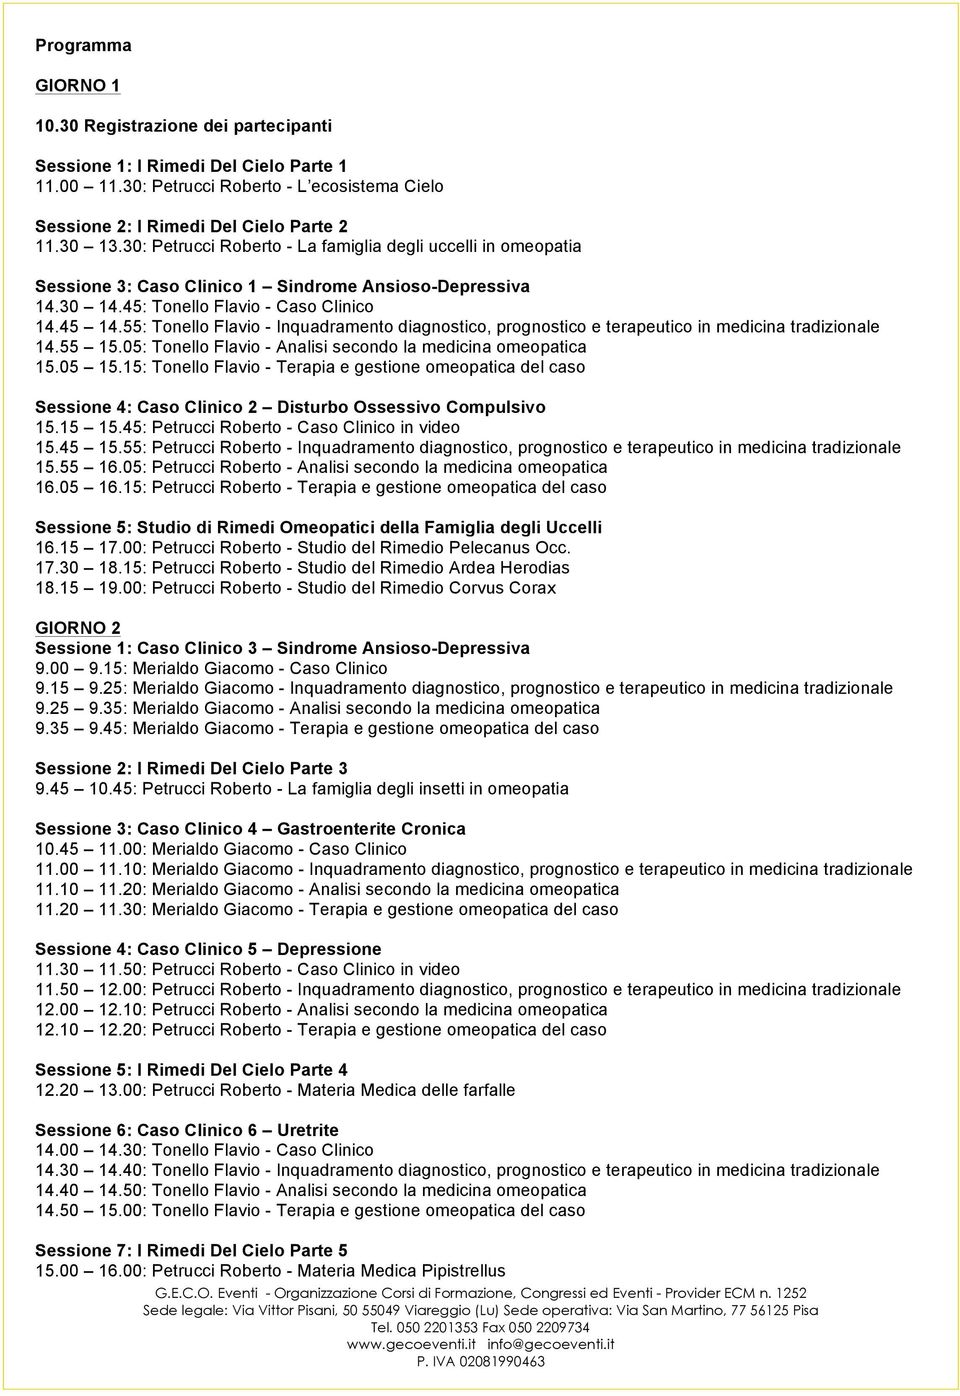 55: Tonello Flavio - Inquadramento diagnostico, prognostico e terapeutico in medicina tradizionale 14.55 15.05: Tonello Flavio - Analisi secondo la medicina omeopatica 15.05 15.